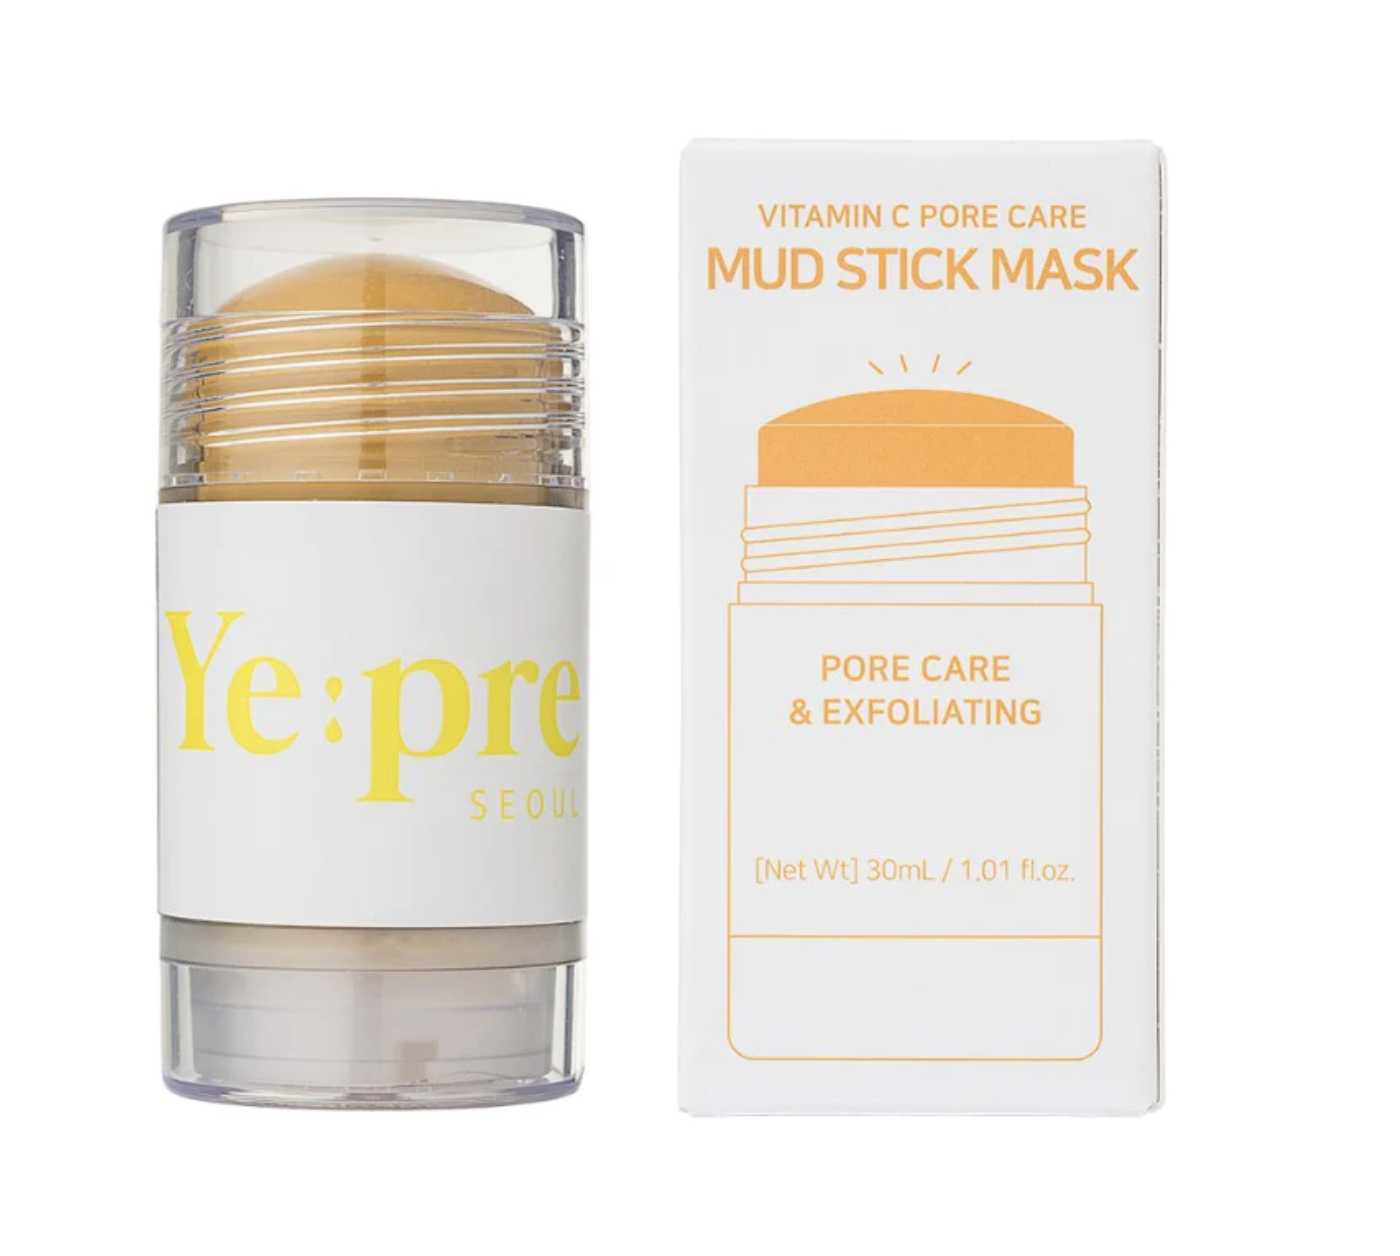 Ye:pre Mud Stick Mask Vitamin C Pore Care